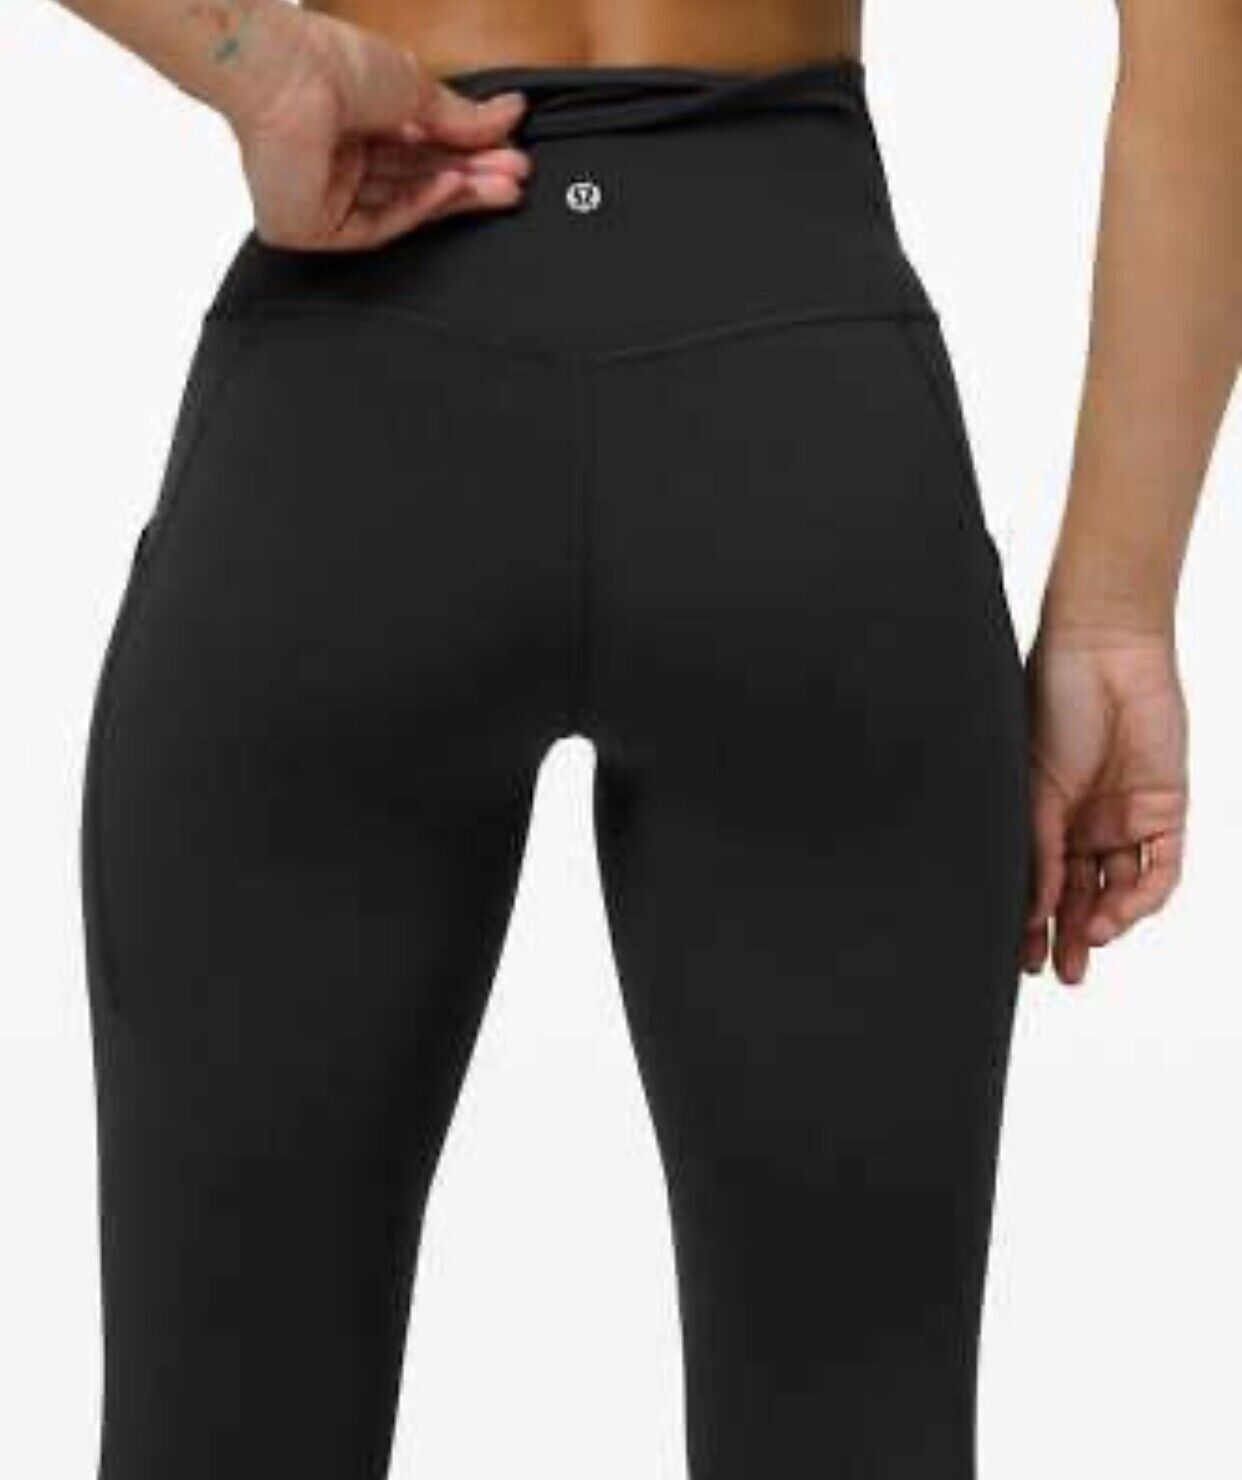 Lululemon Align Yoga Pants 25 Black High Rise Women Leggings Size  2/4/6/8/10/12